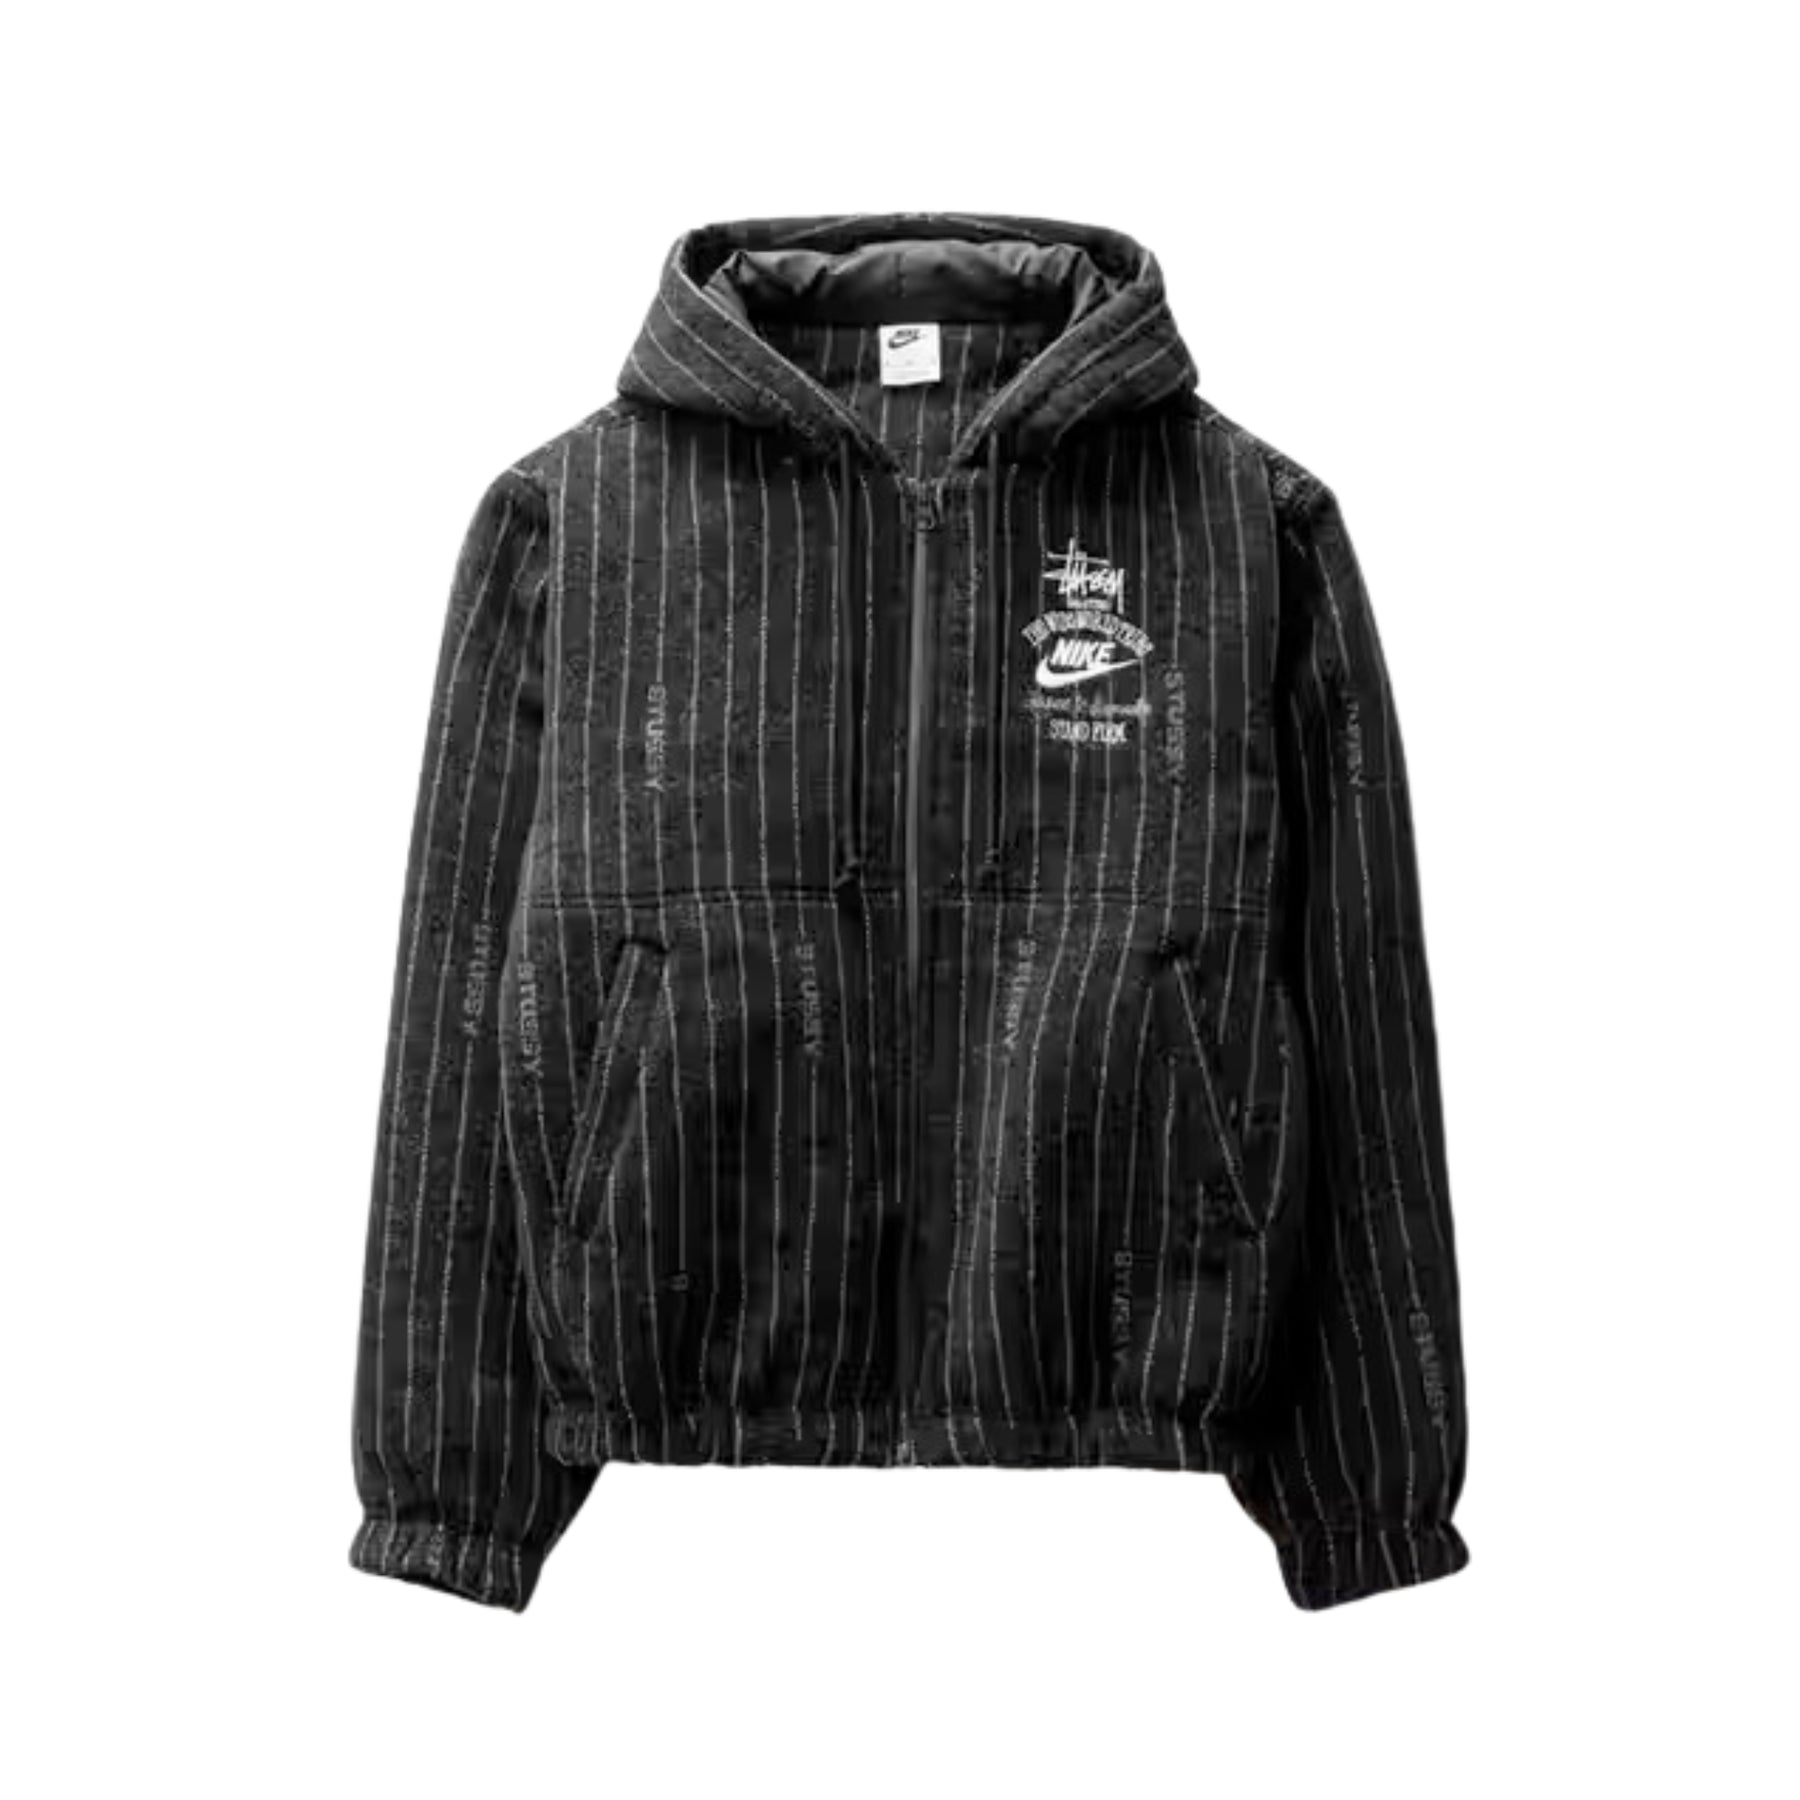 Nike x Stüssy Striped Wool Jacket "Black" - street-bill.dk